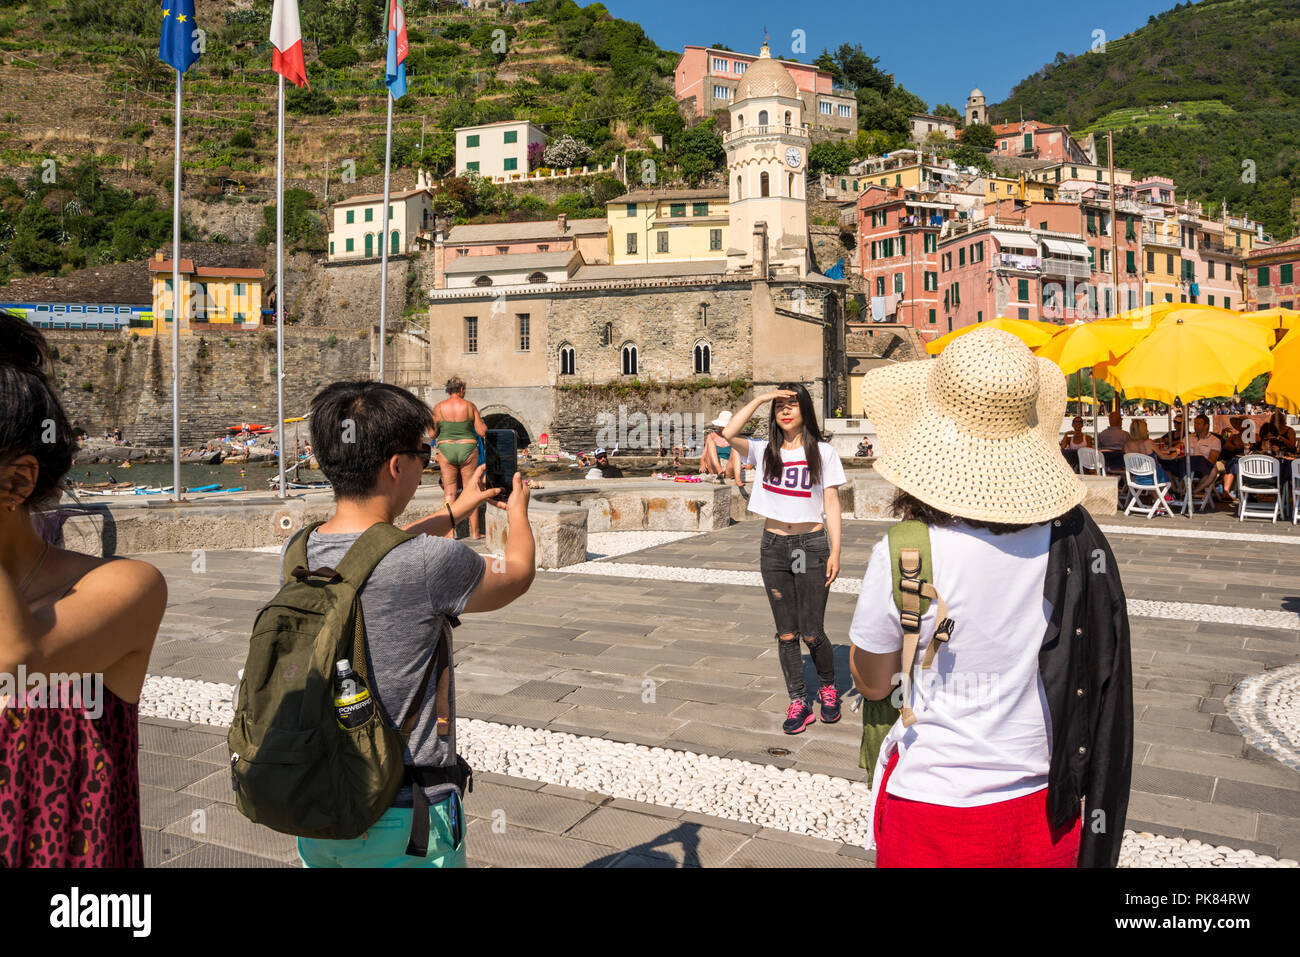 Les touristes de prendre des photos, Vernazza, l'un des 5 villages des Cinque Terre, ligurie, italie Banque D'Images